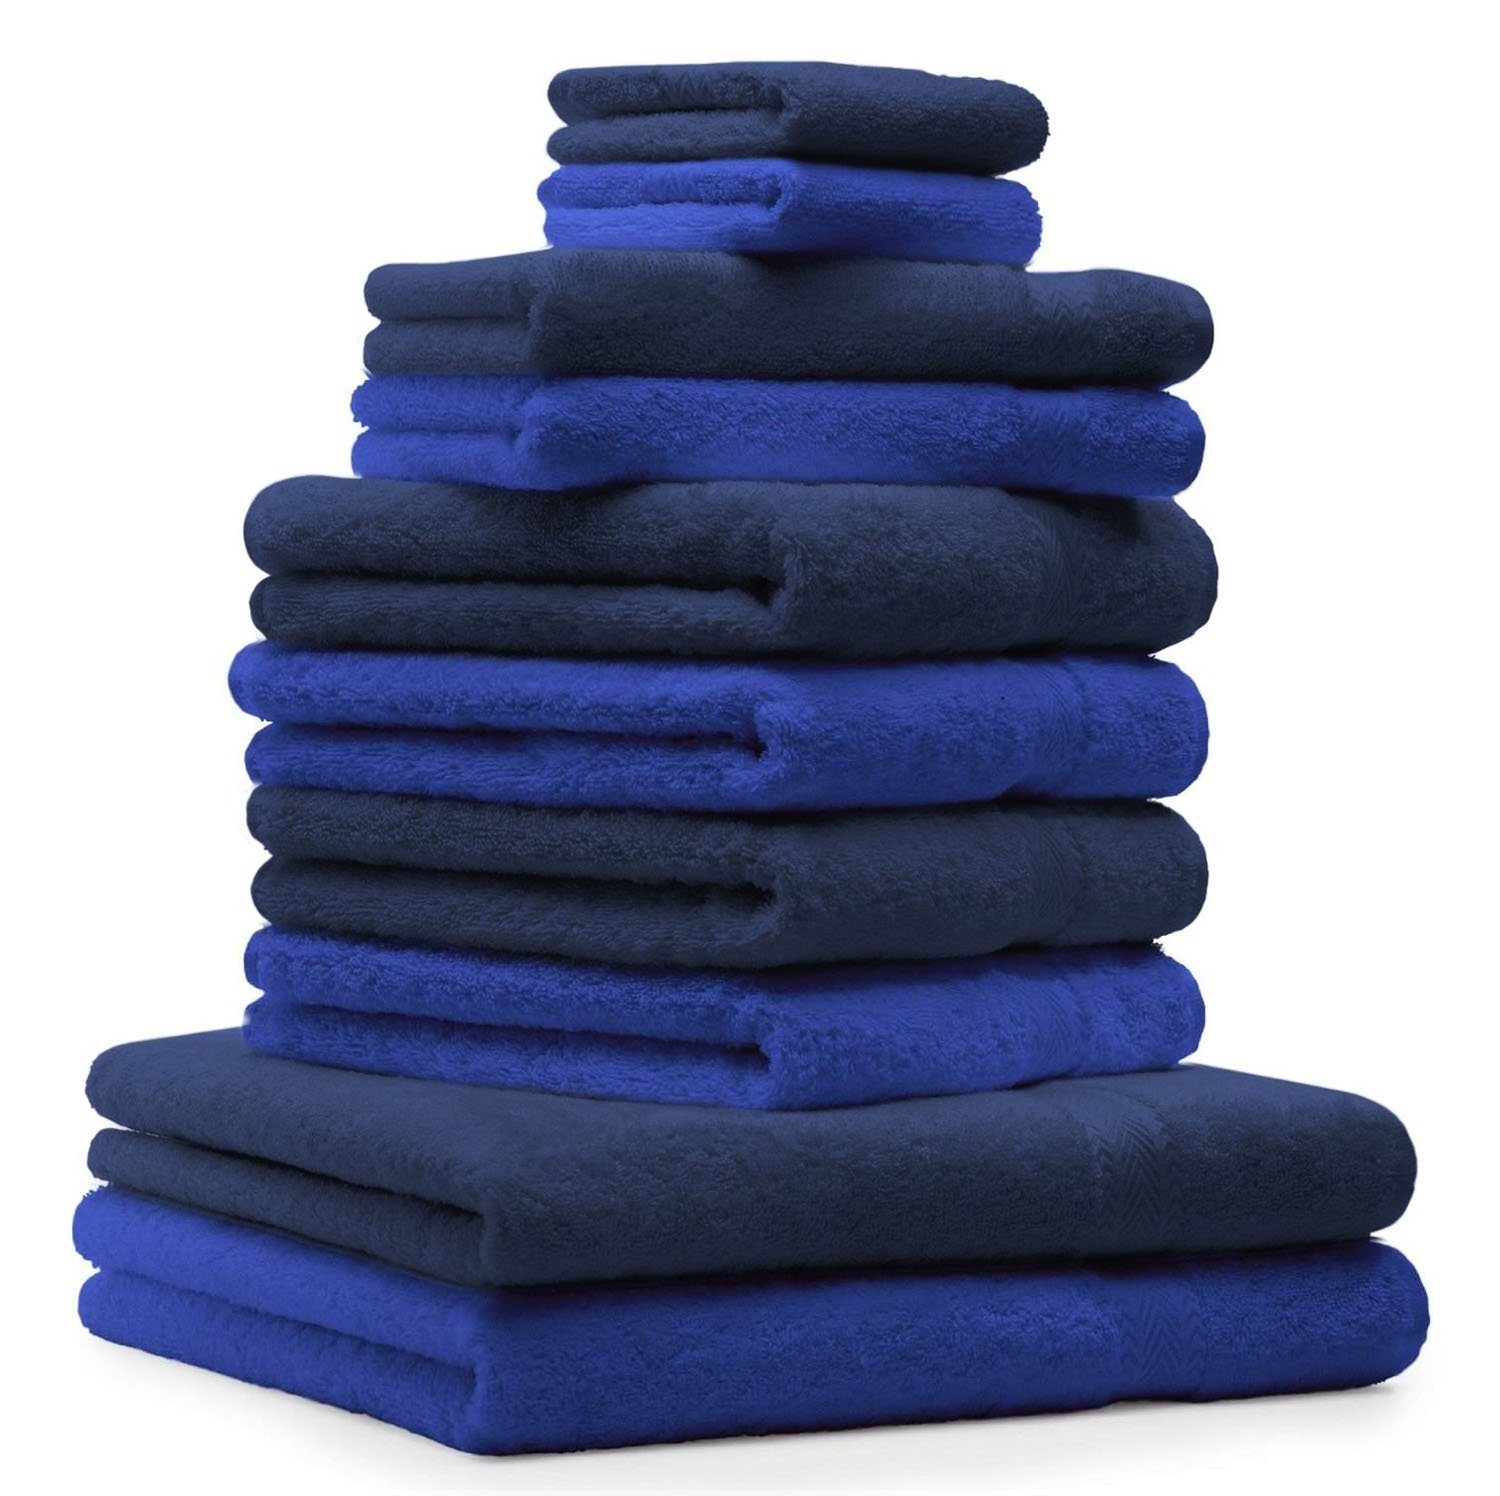 Betz Handtuch Set 10-TLG. Handtuch-Set Classic Farbe dunkelblau und royalblau, 100% Baumwolle